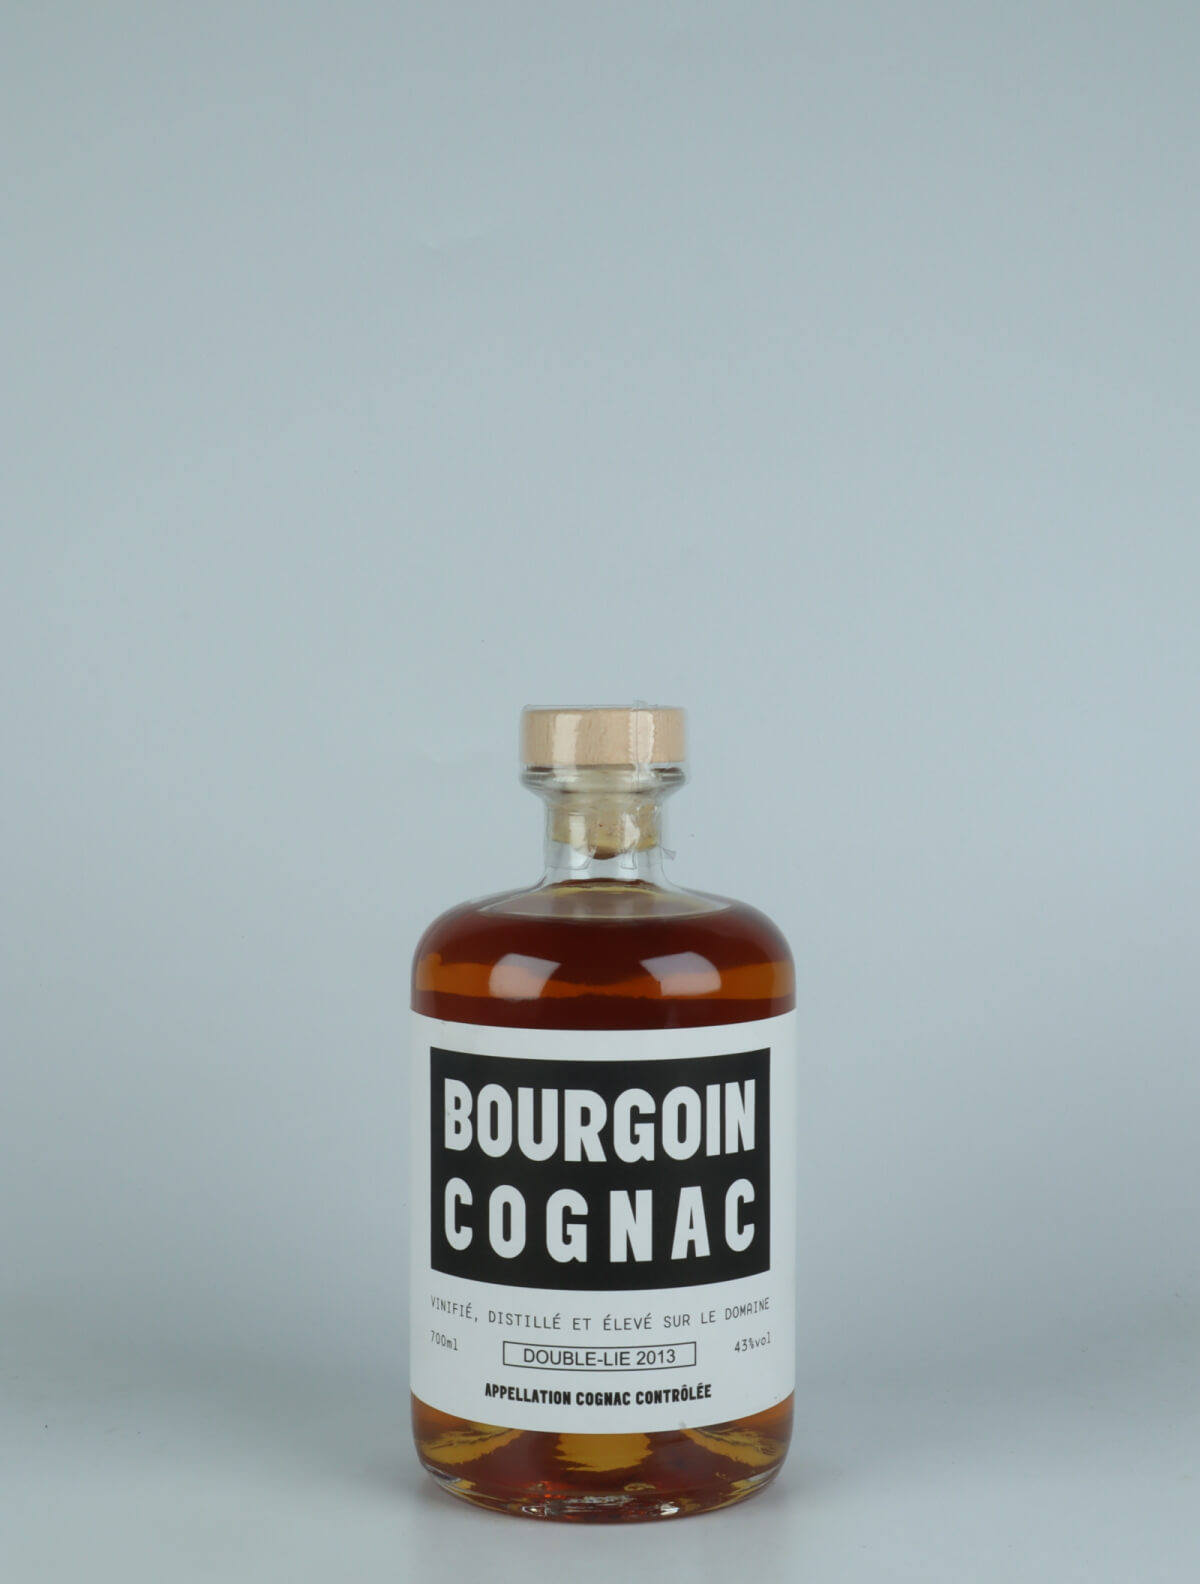 En flaske N.V. Cognac XO - Double Lie - 10 Years Old (2013) Spiritus fra Bourgoin Cognac, Cognac i Frankrig